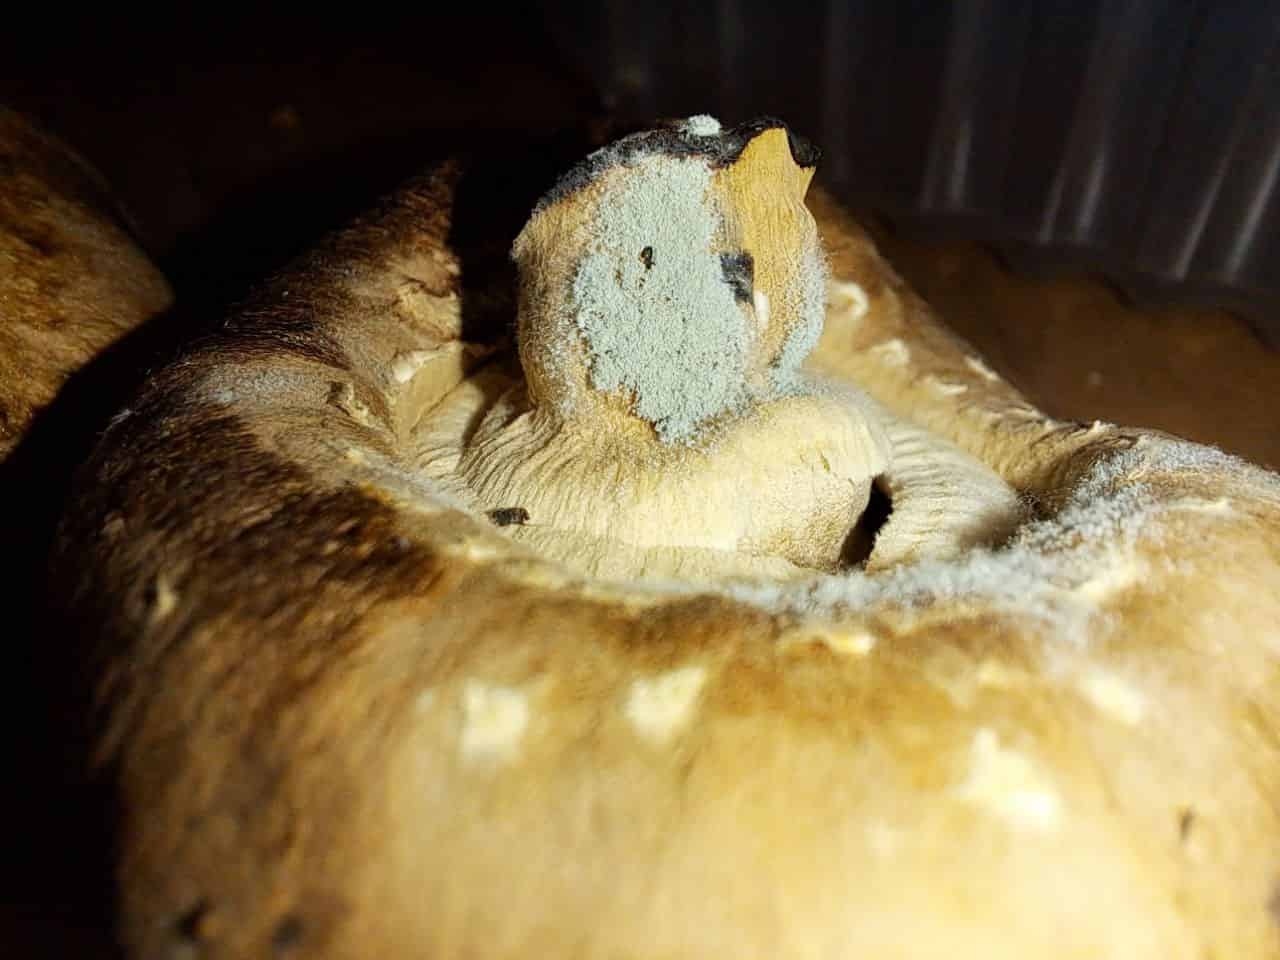 Blue Thrichoderma on mushroom